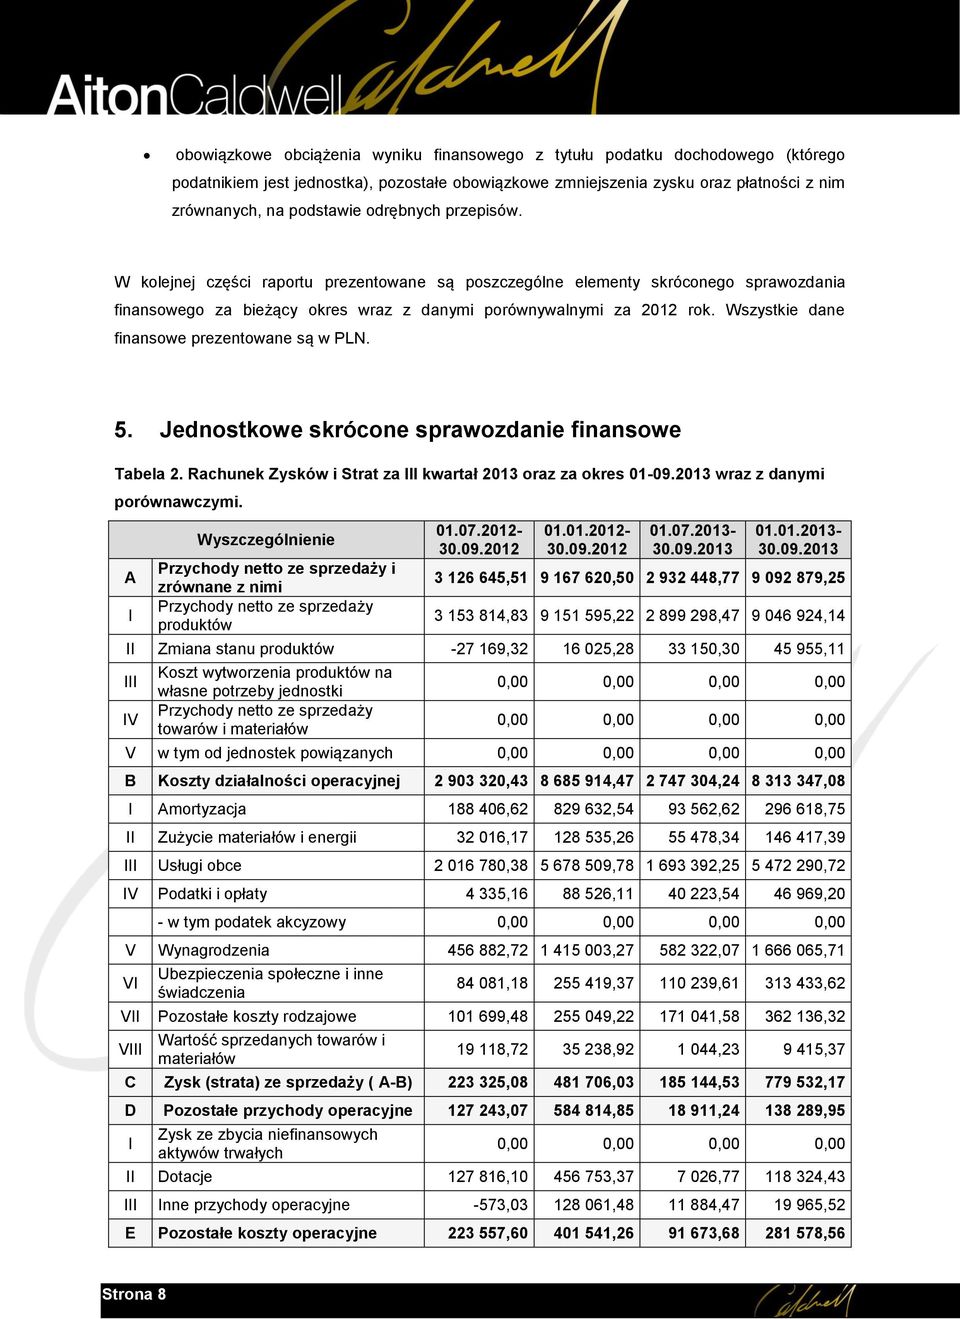 Wszystkie dane finansowe prezentowane są w PLN. 5. Jednostkowe skrócone sprawozdanie finansowe Tabela 2. Rachunek Zysków i Strat za III kwartał 2013 oraz za okres 01-09.